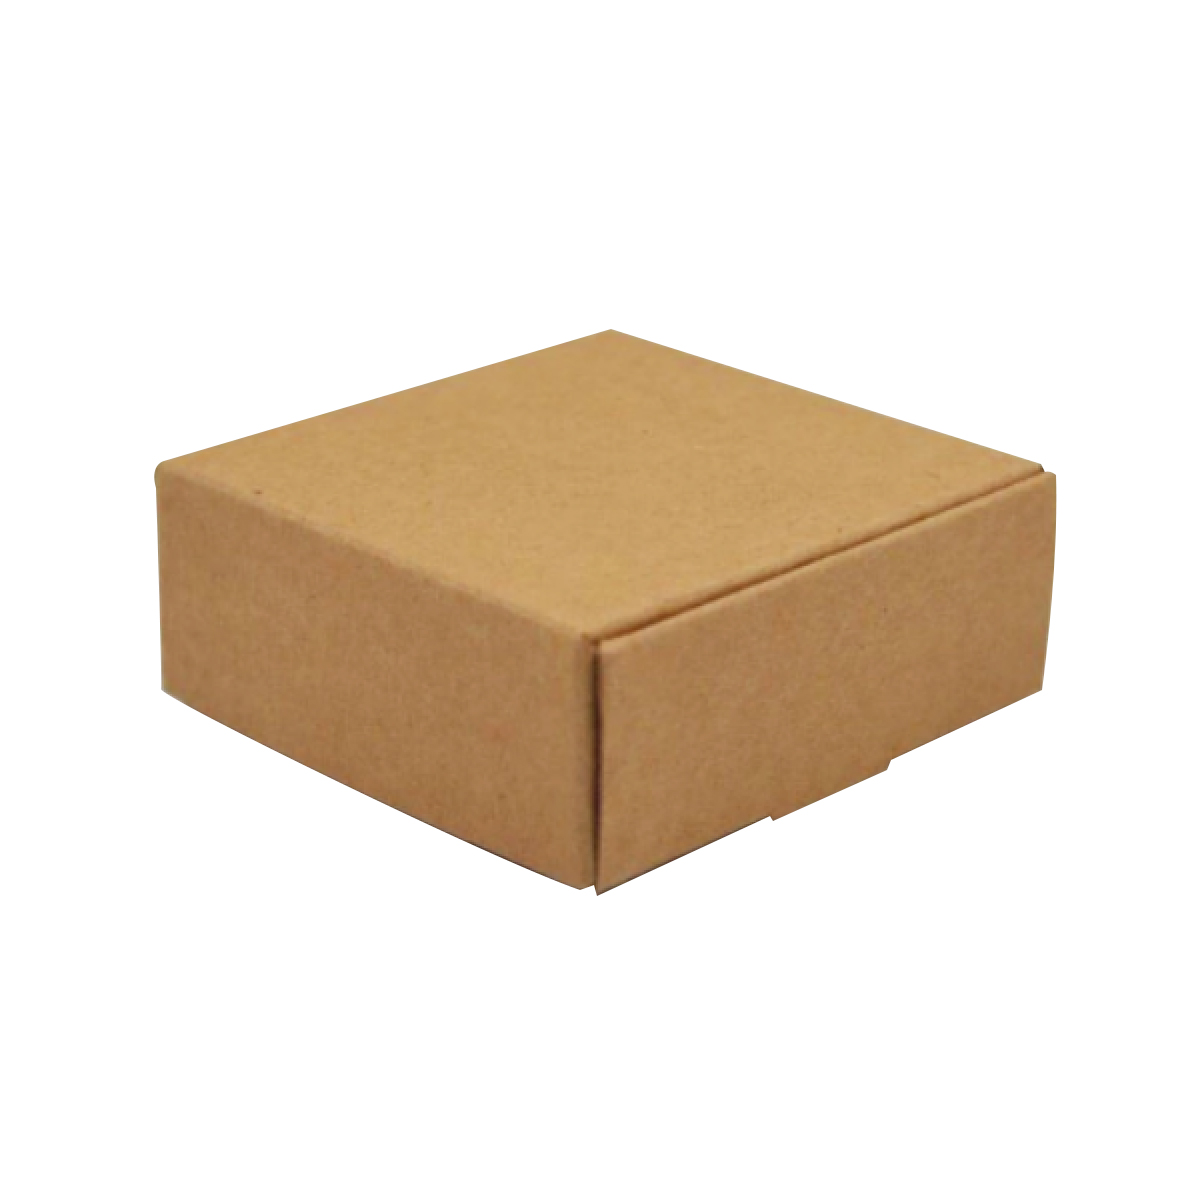 Emballage e-commerce en carton.3